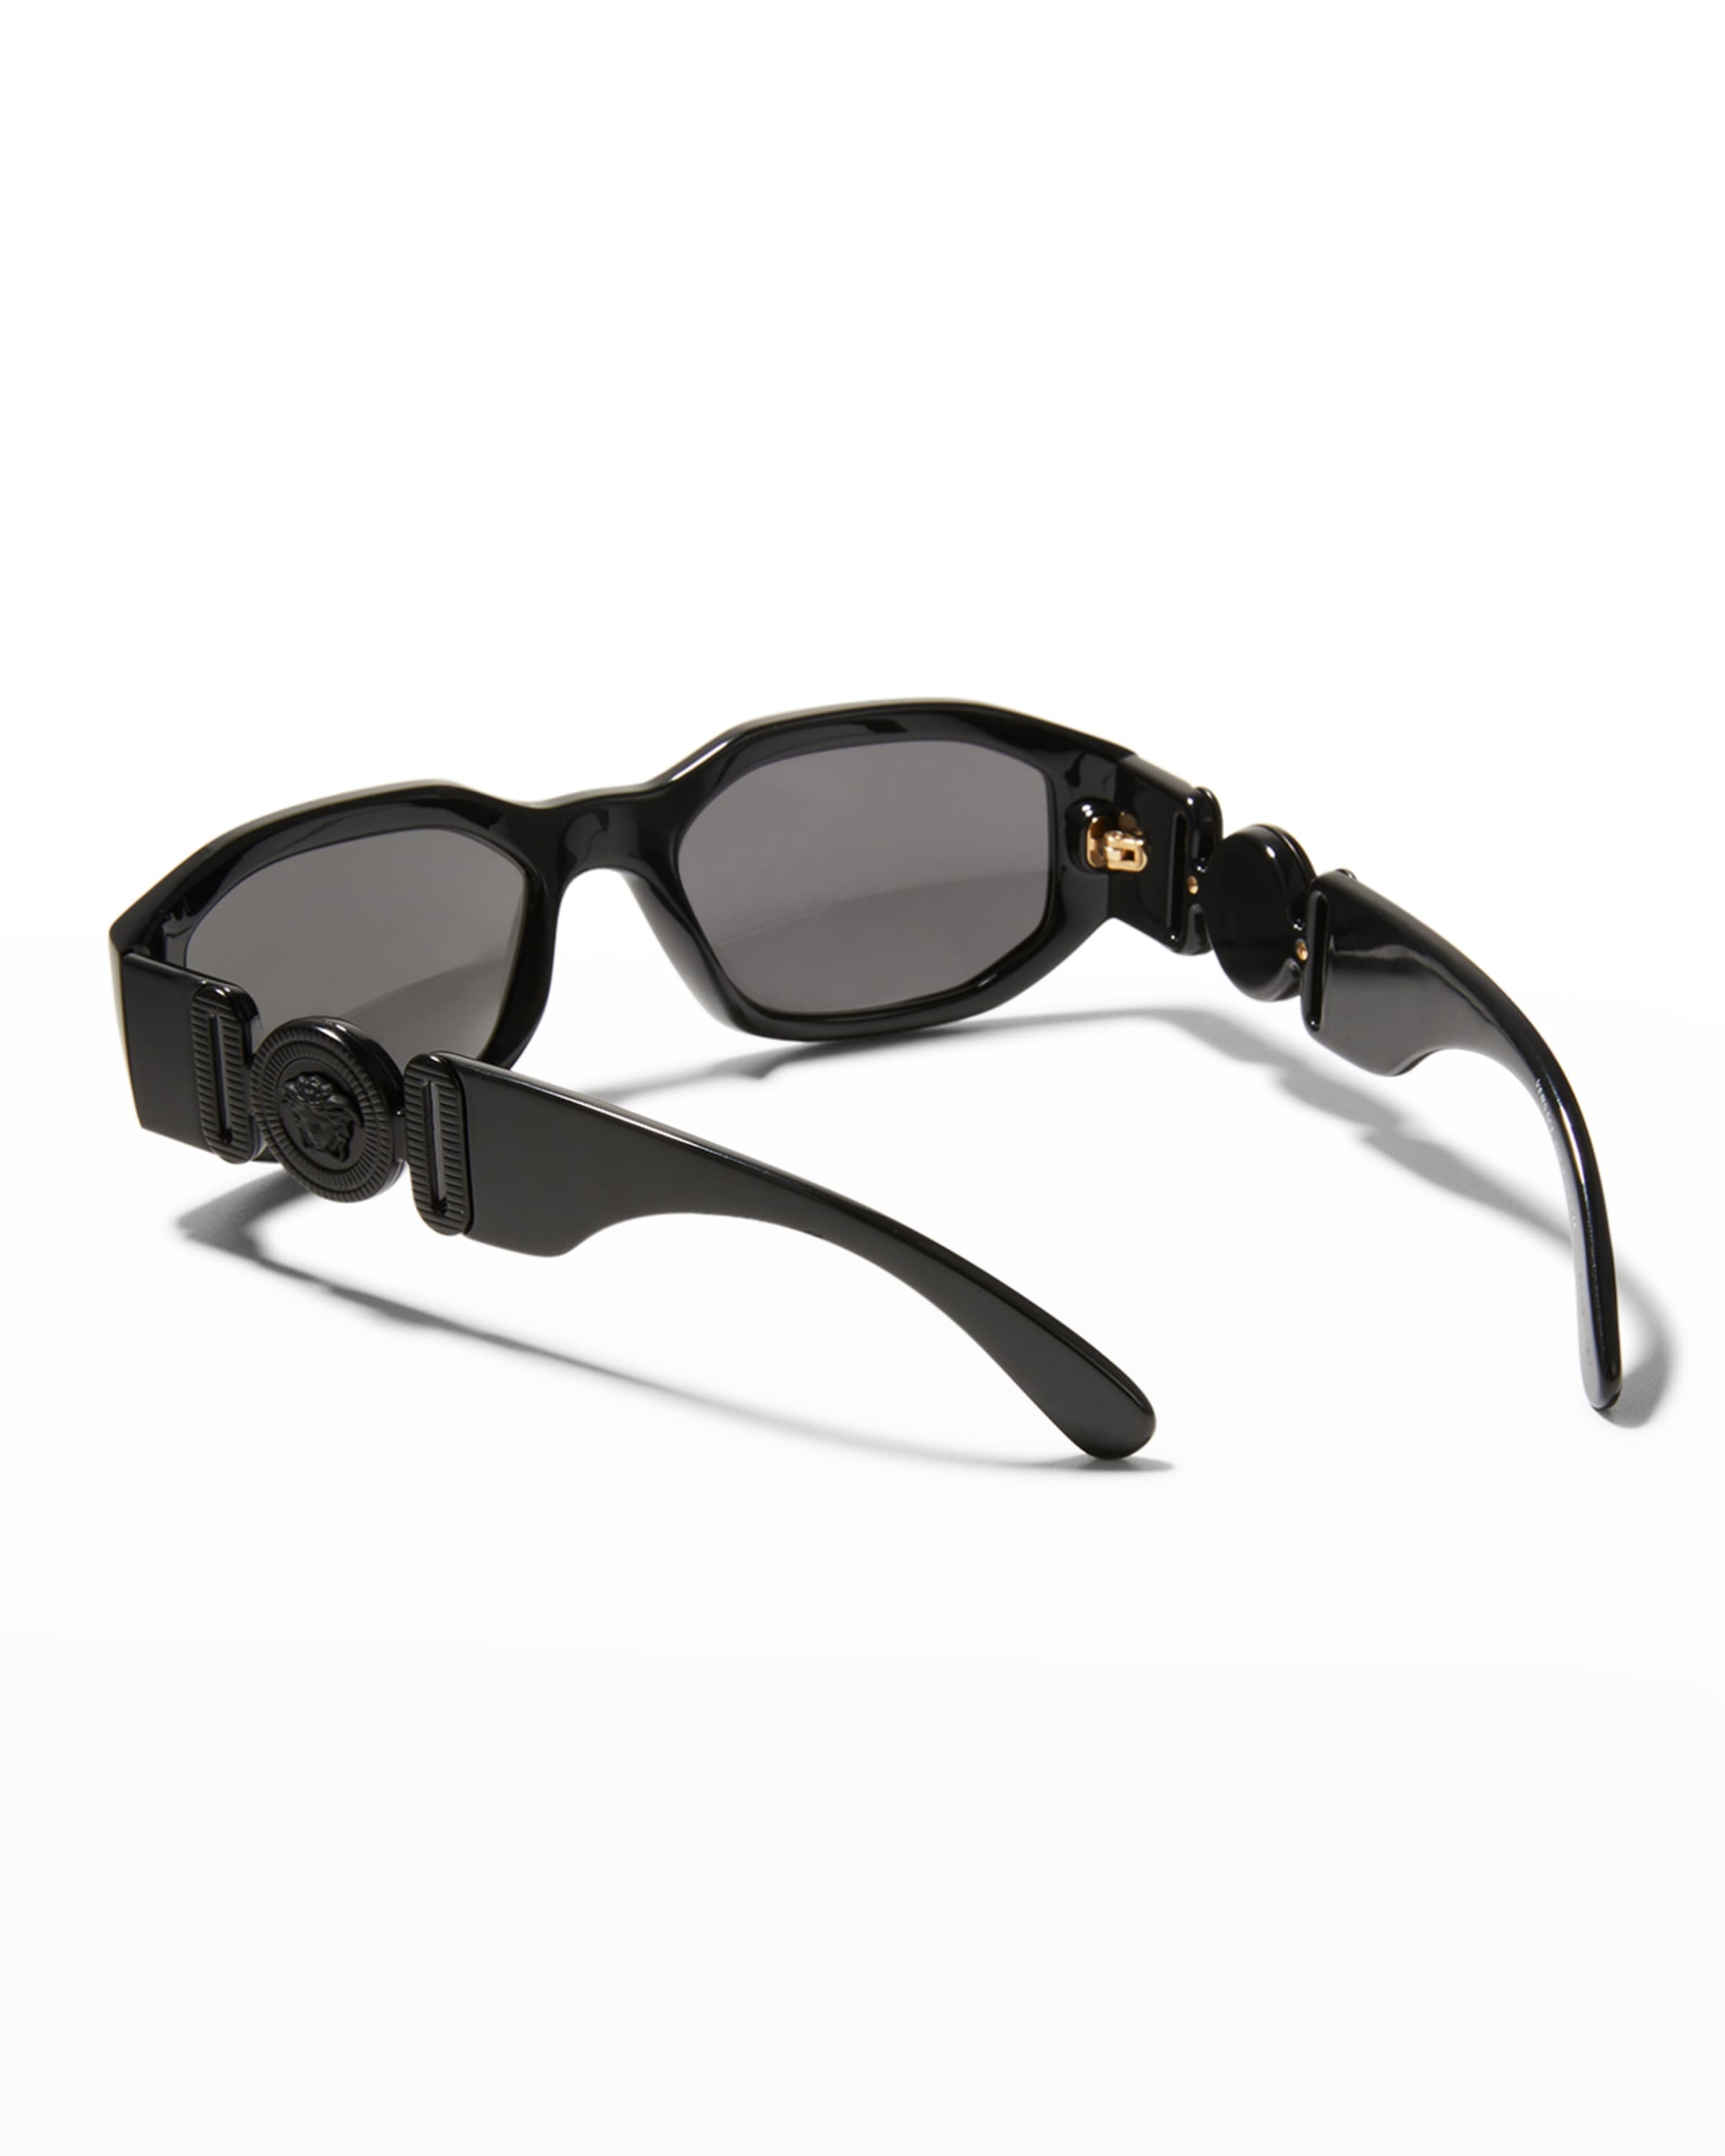 Men's Geometric Propionate Sunglasses - 2